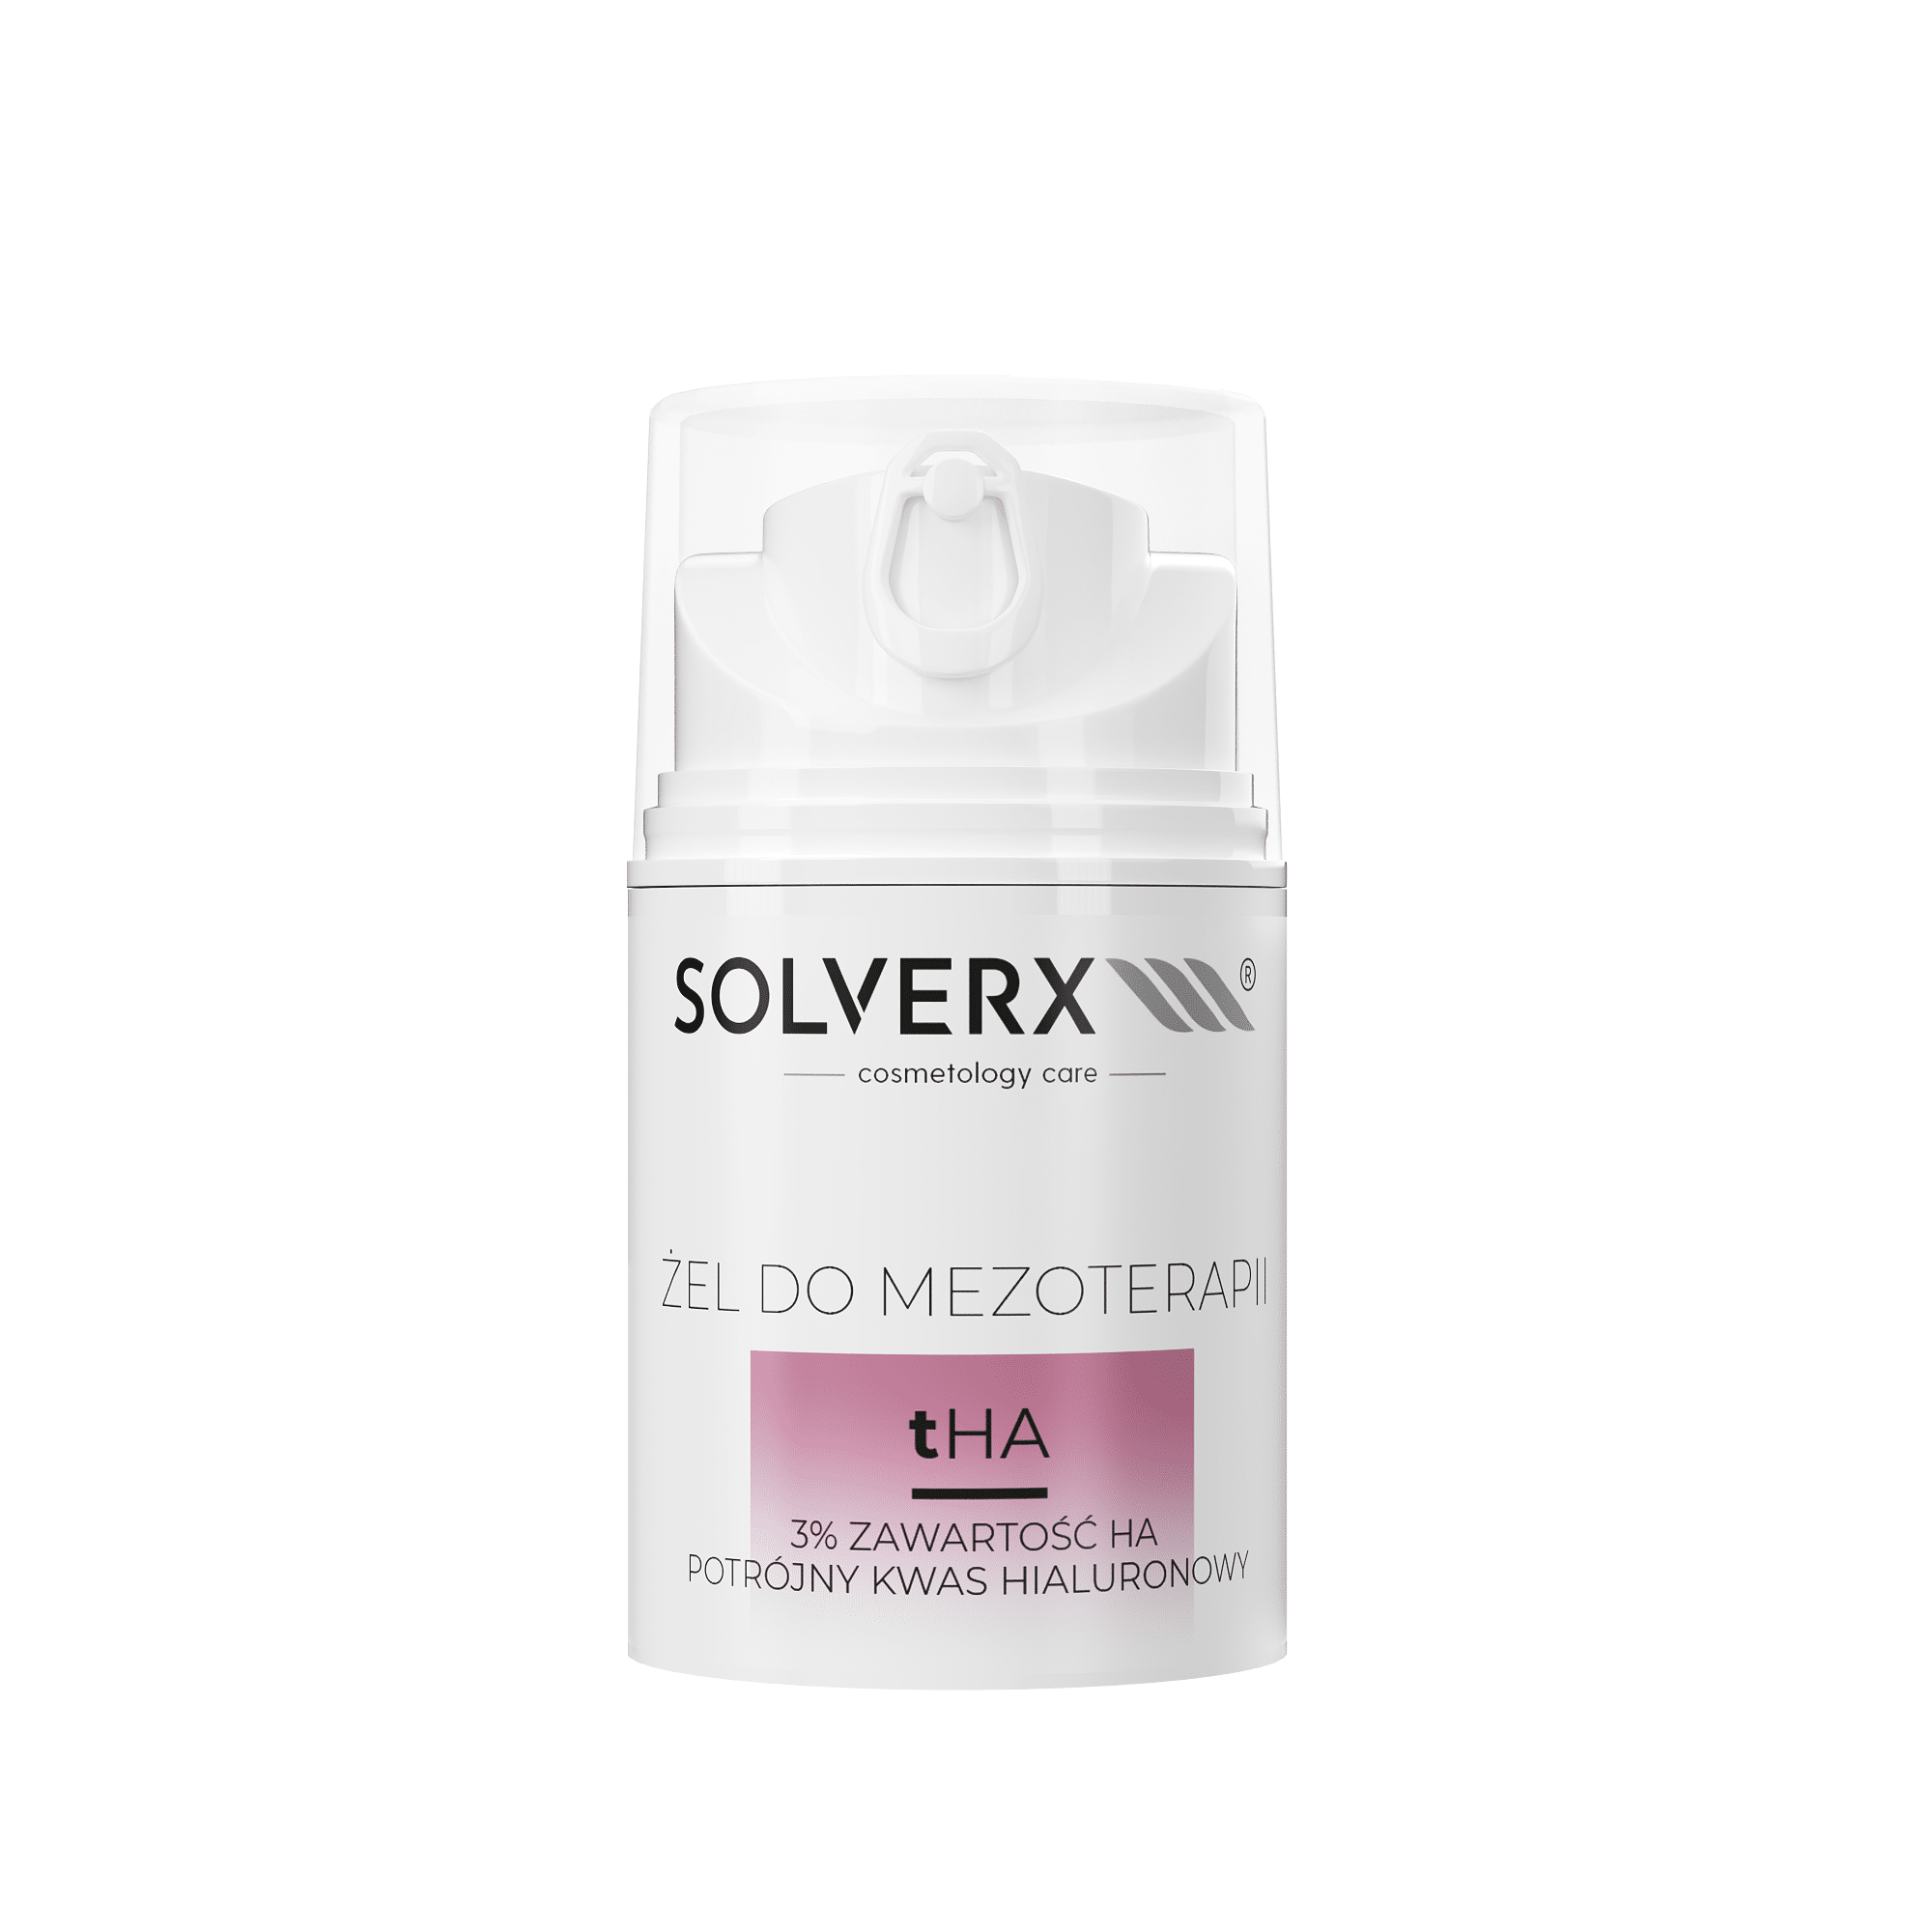 SOLVERX Cosmetology Care tHA Żel do mezoterapii mikroigłowej i bezigłowej